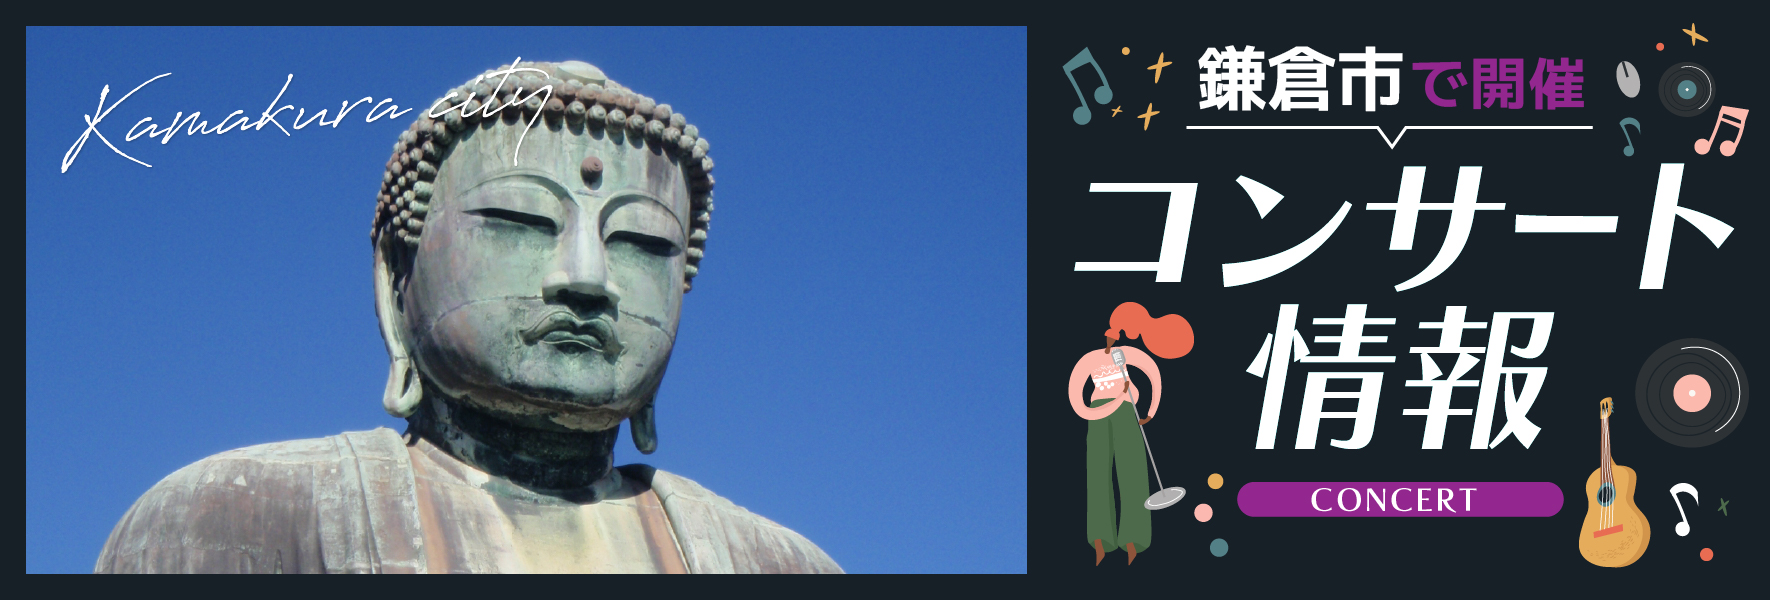 【鎌倉市】歴史的邸宅で奏でるバッハの名曲「鎌倉の小さな音楽祭」